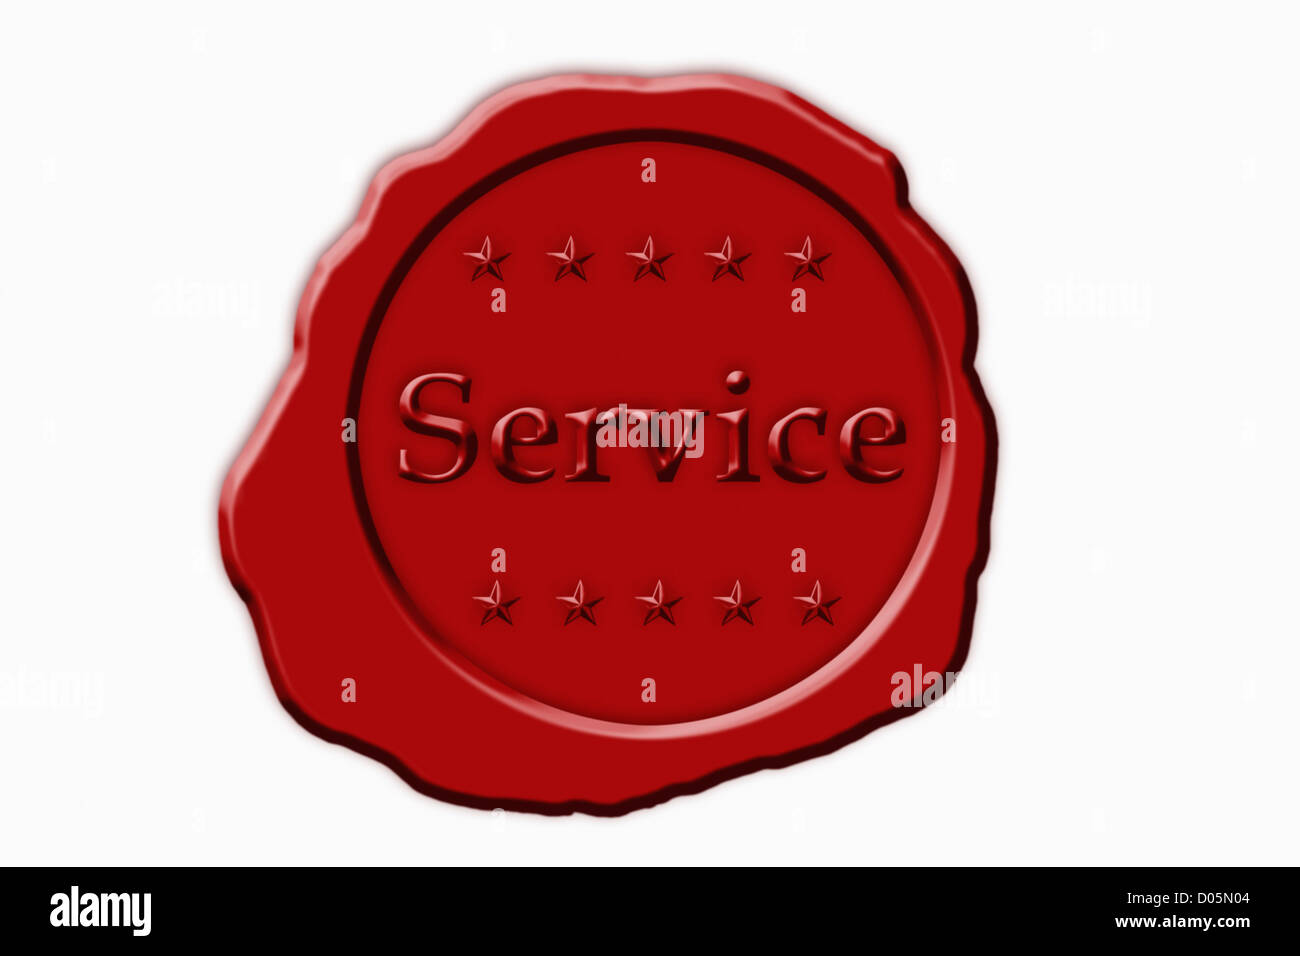 Detailansicht eines roten Siegels mit der Aufschrift Servizio | Dettaglio foto di un sigillo rosso con la scritta service Foto Stock